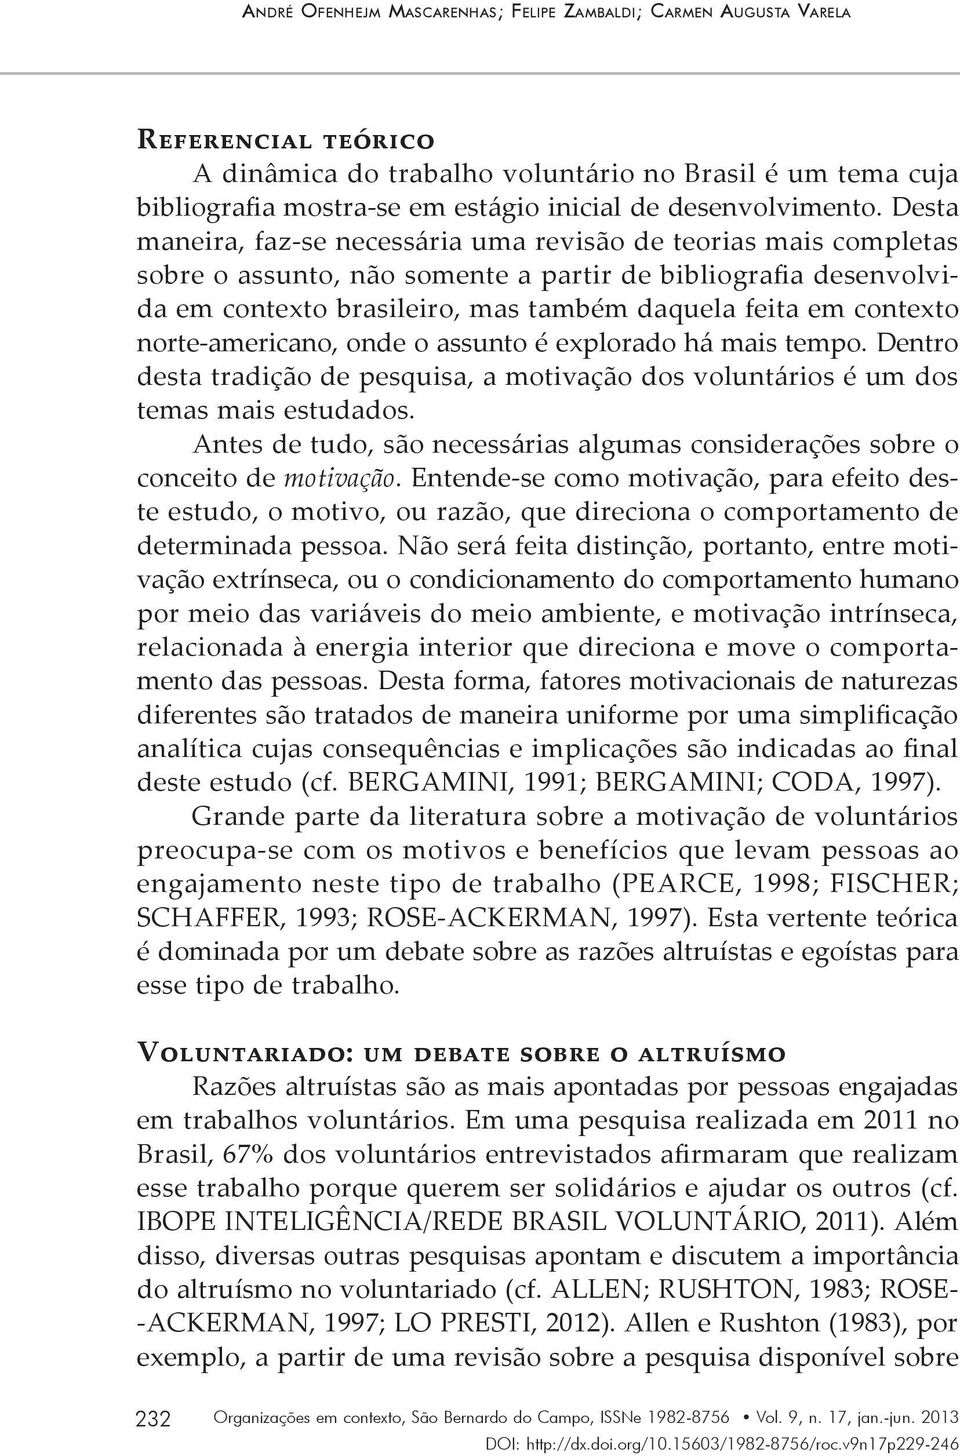 Desta maneira, faz-se necessária uma revisão de teorias mais completas sobre o assunto, não somente a partir de bibliografia desenvolvida em contexto brasileiro, mas também daquela feita em contexto